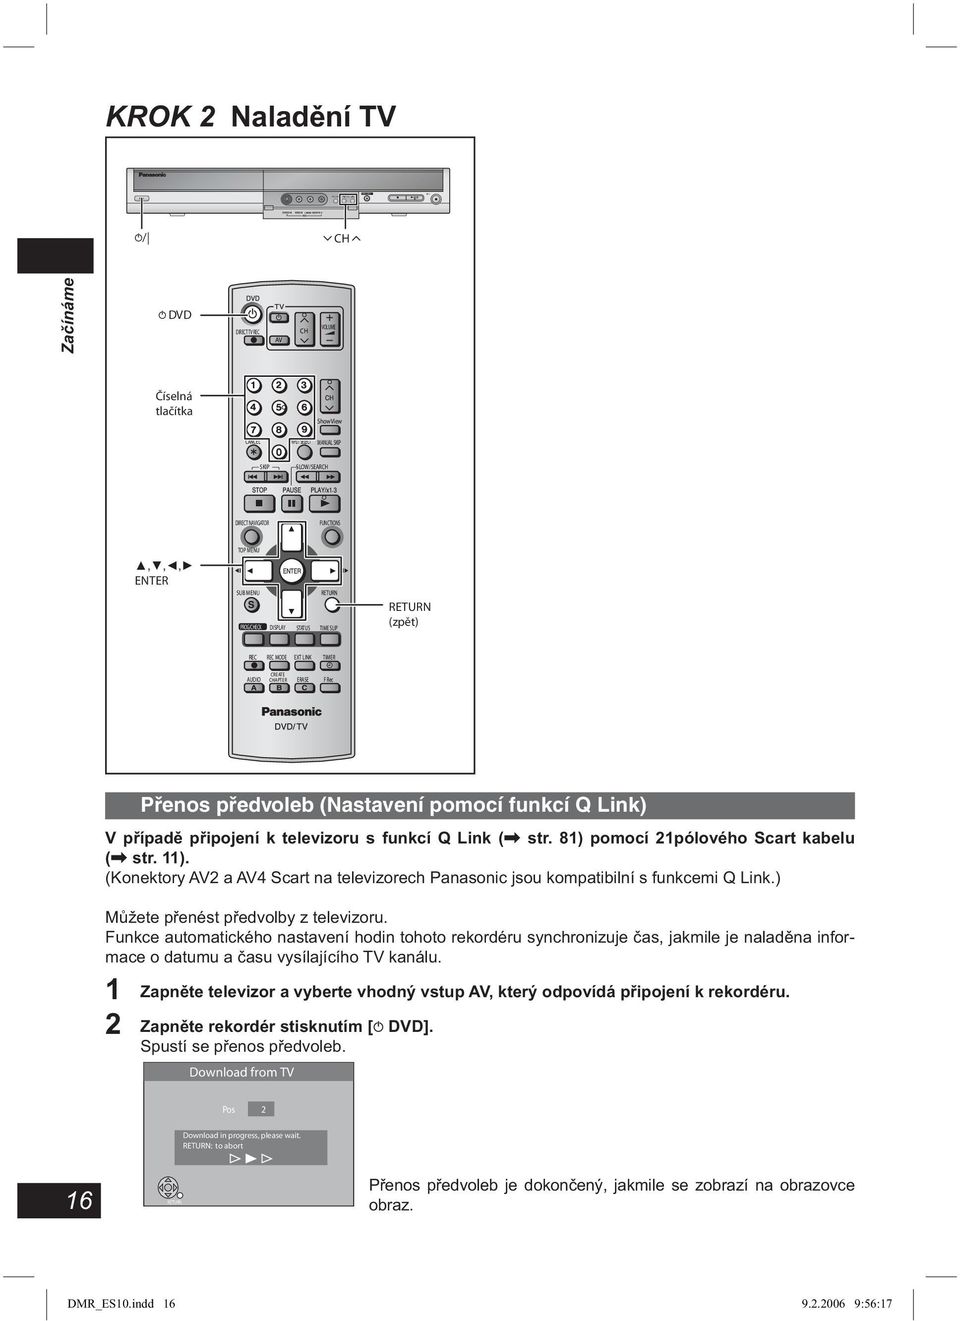 televizoru s funkcí Q Link (\ str. 81) pomocí 21pólového Scart kabelu (\ str. 11). (Konektory AV2 a AV4 Scart na televizorech Panasonic jsou kompatibilní s funkcemi Q Link.